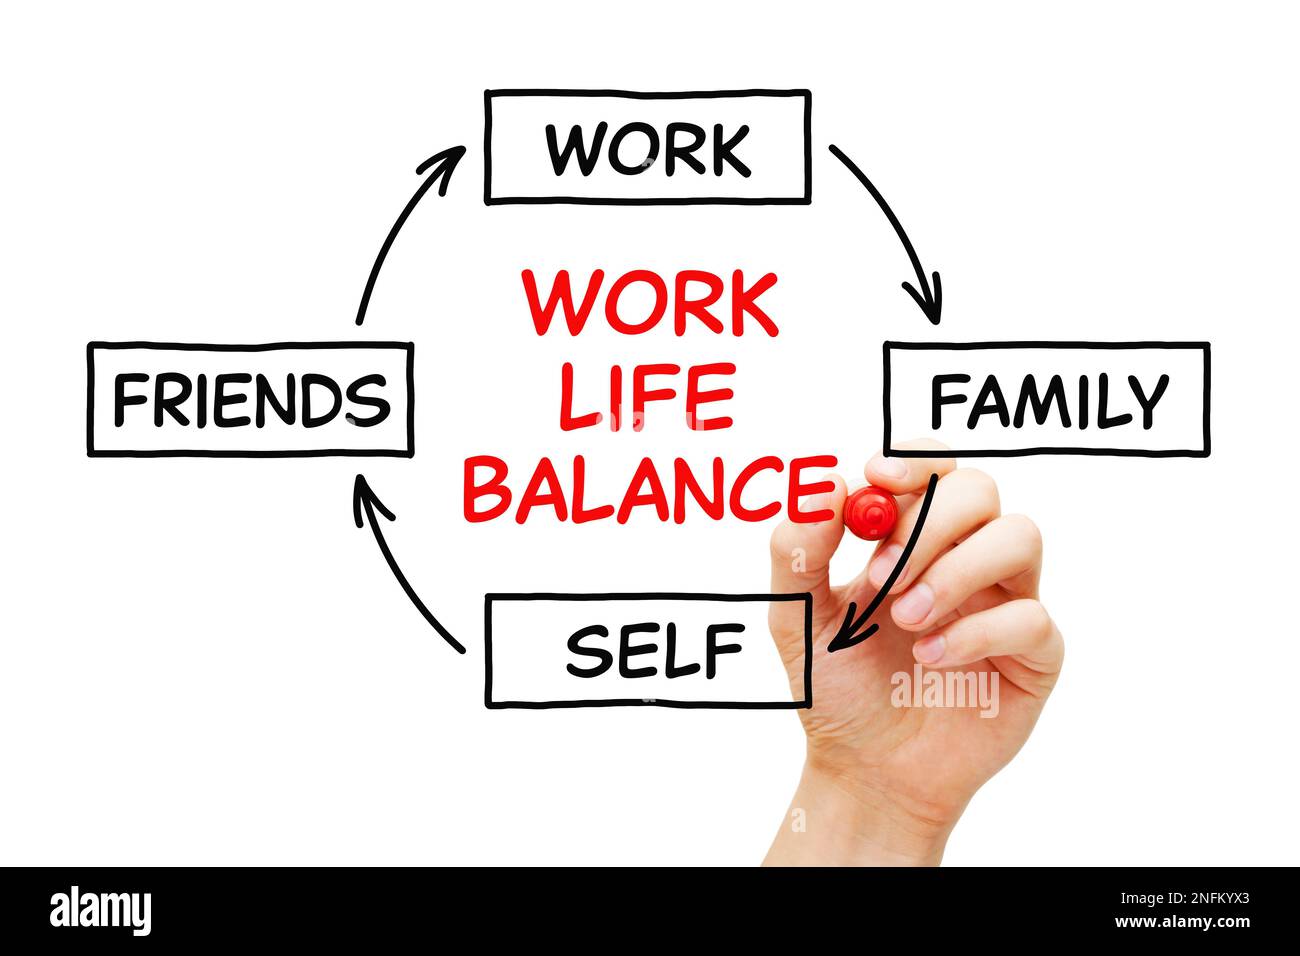 Dessin à la main travail diagramme d'équilibre de la vie carte heuristique concept de processus sur l'importance de l'équilibre dans la vie entre le travail, la famille, l'individu et les amis. Banque D'Images